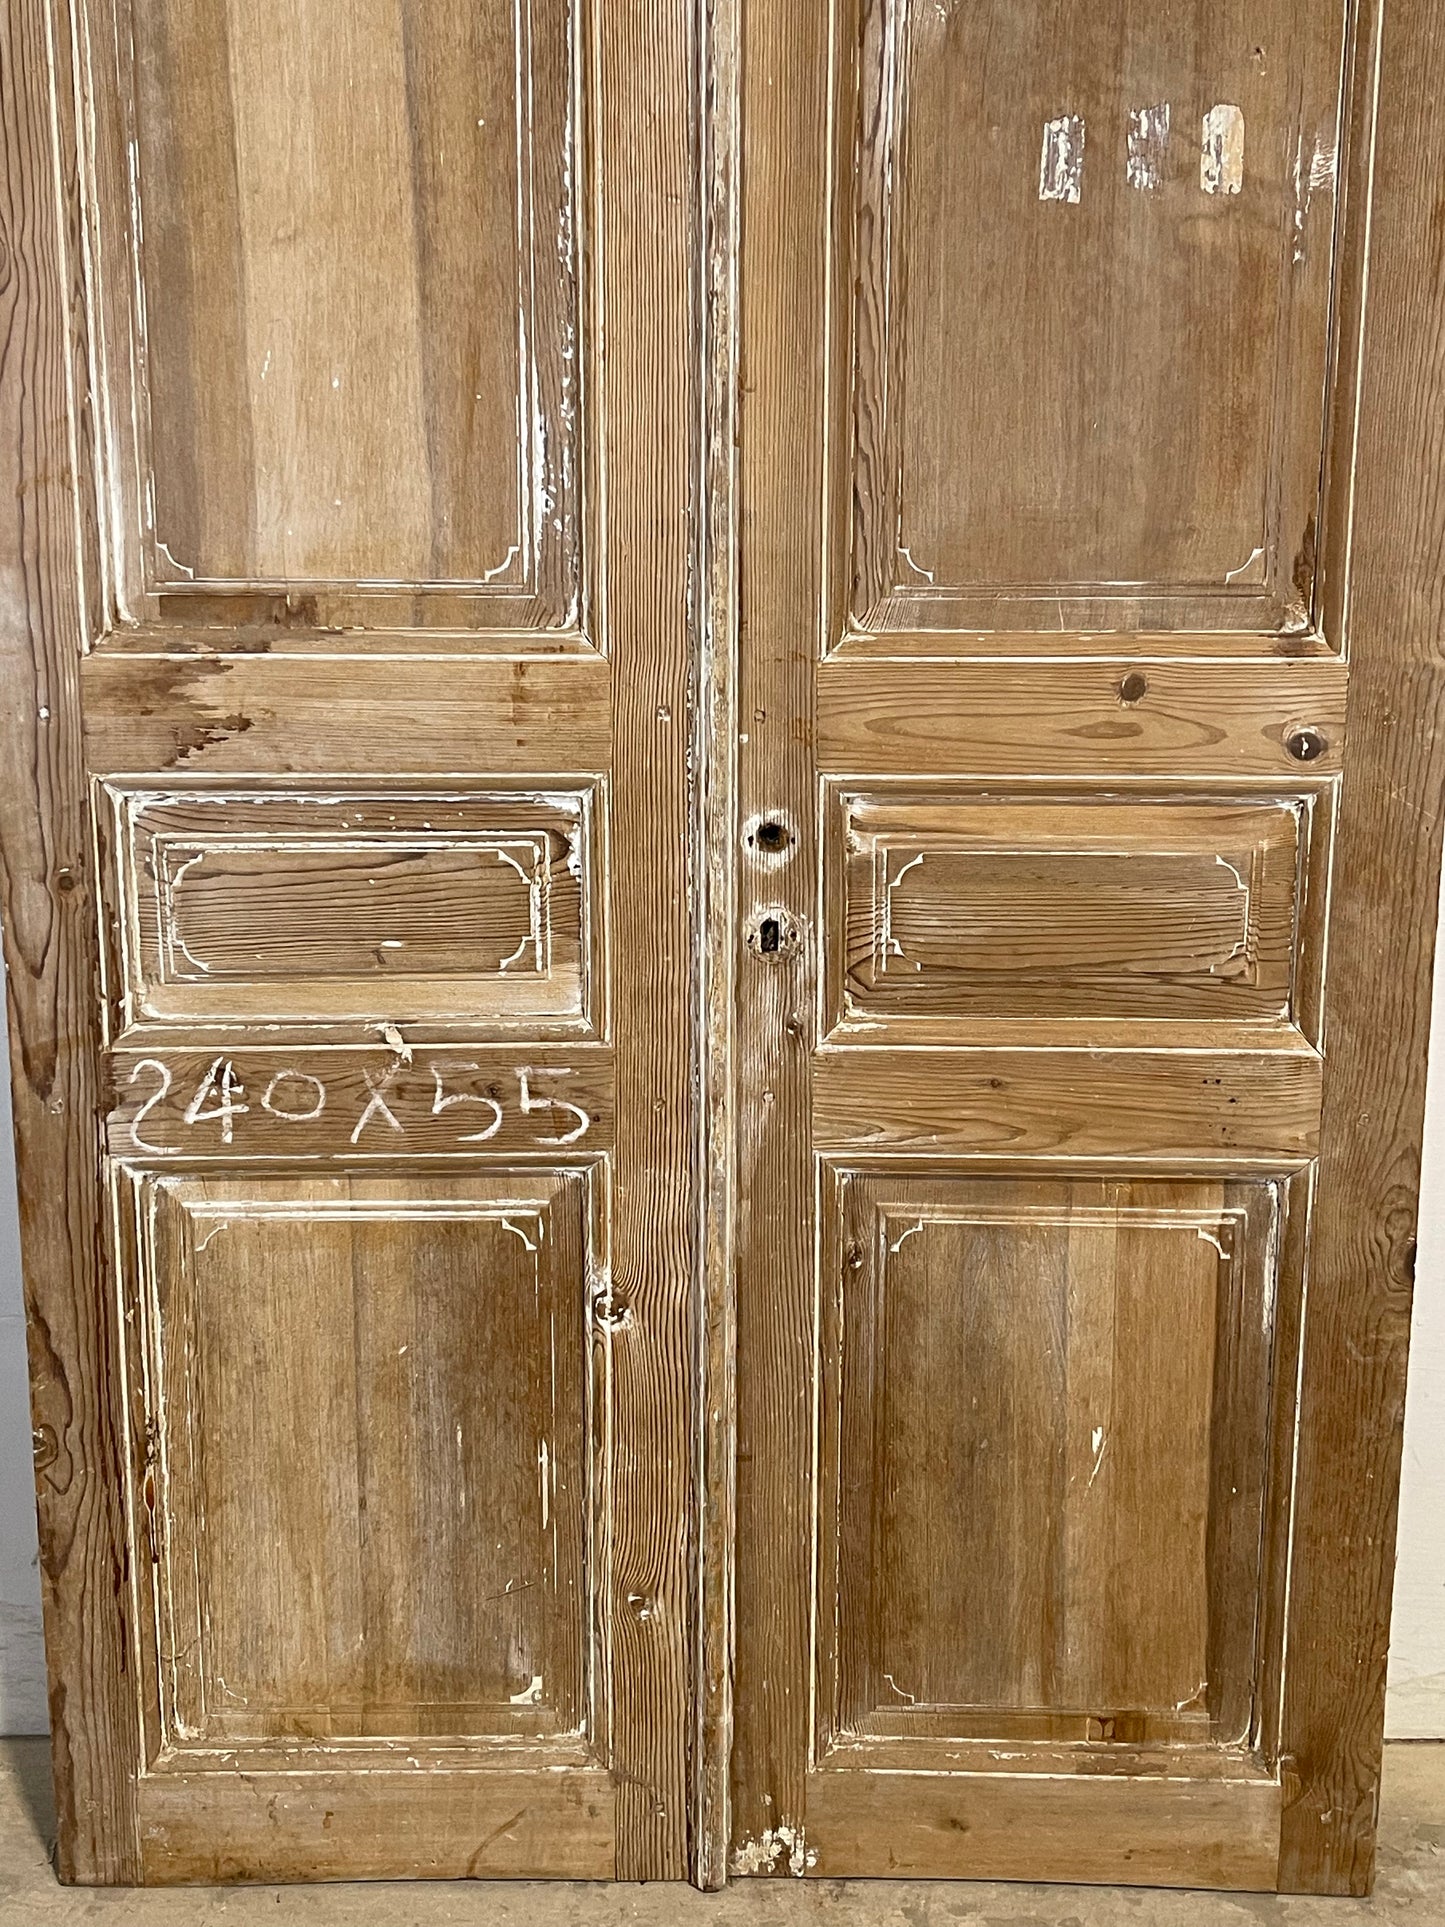 Antique French panel Doors (93.75x43.5) K660